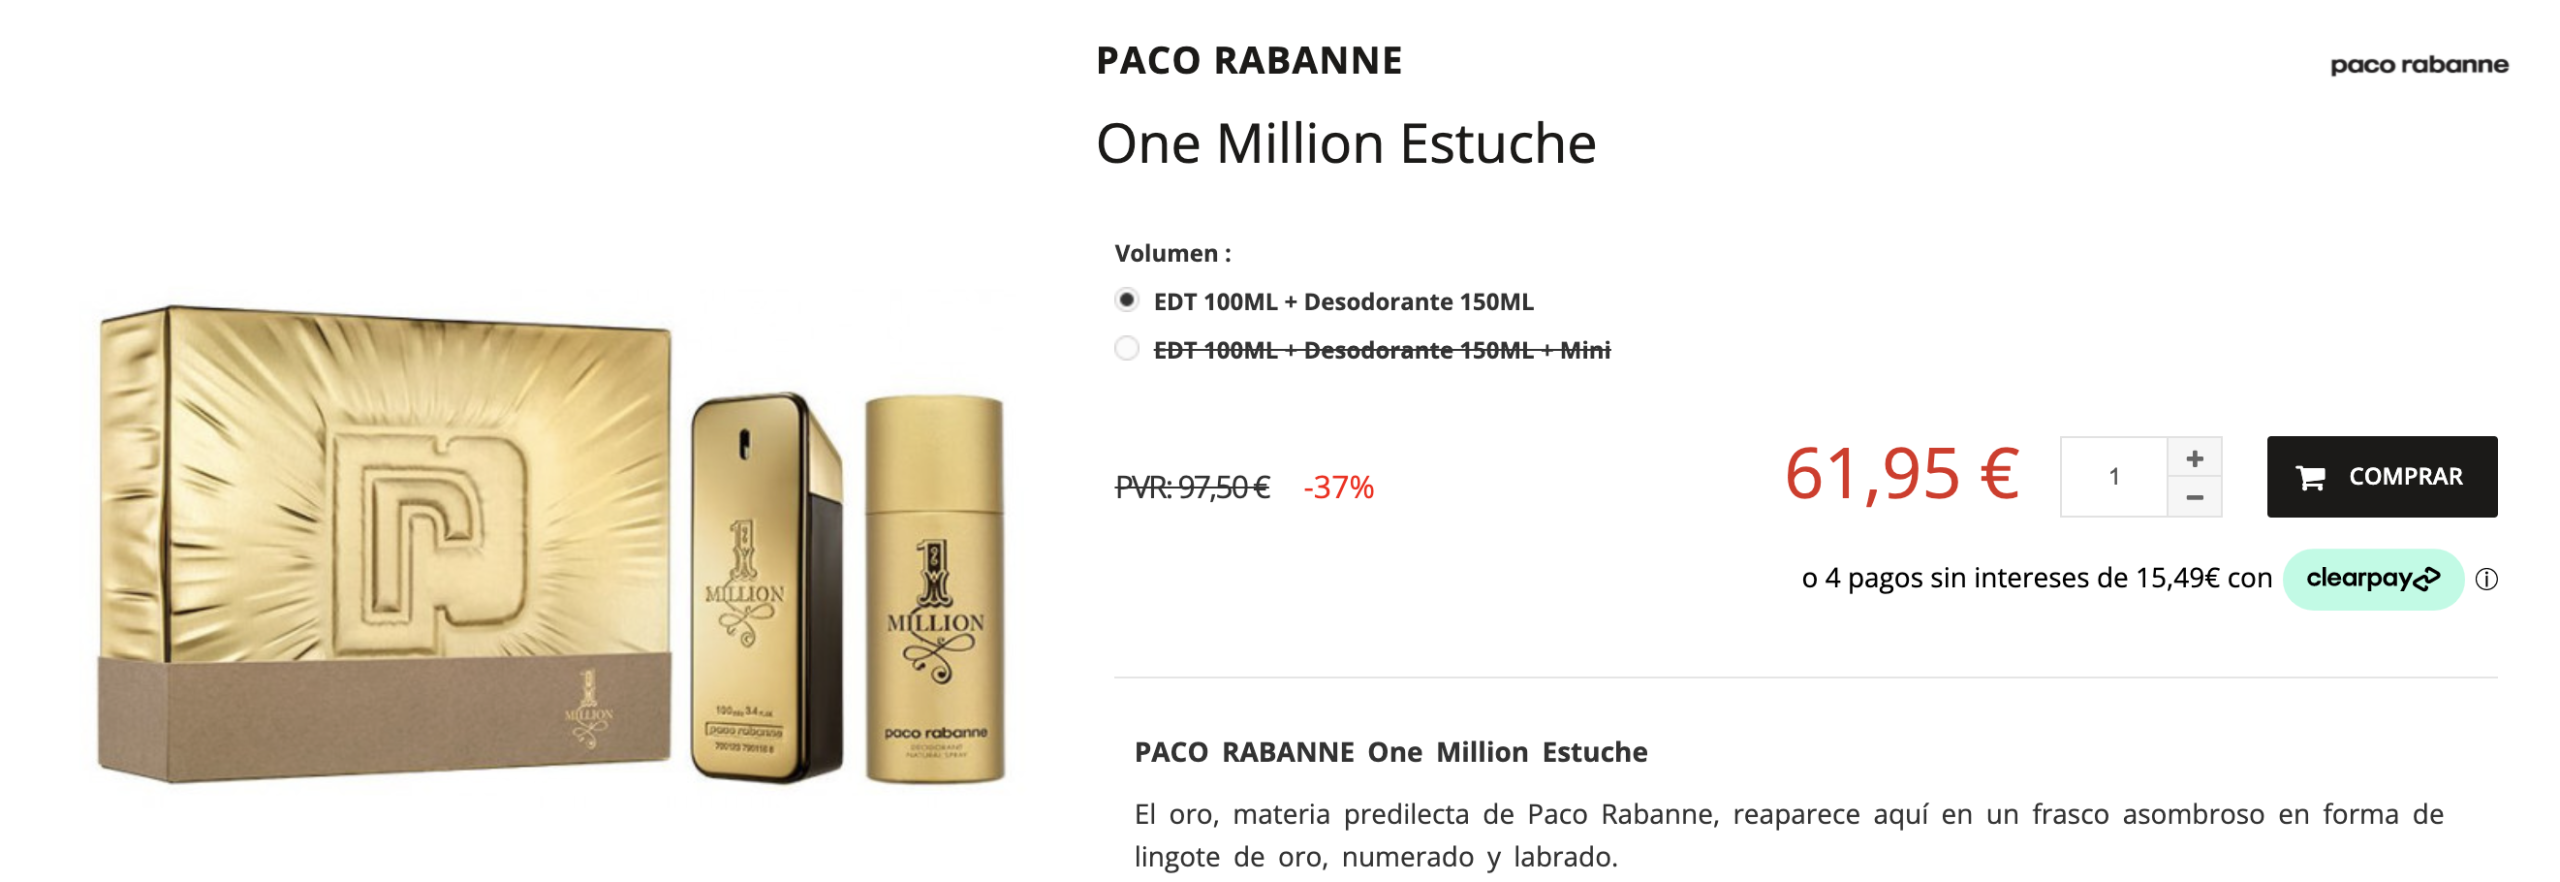 Ejemplo de cross selling de Paco Rabanne